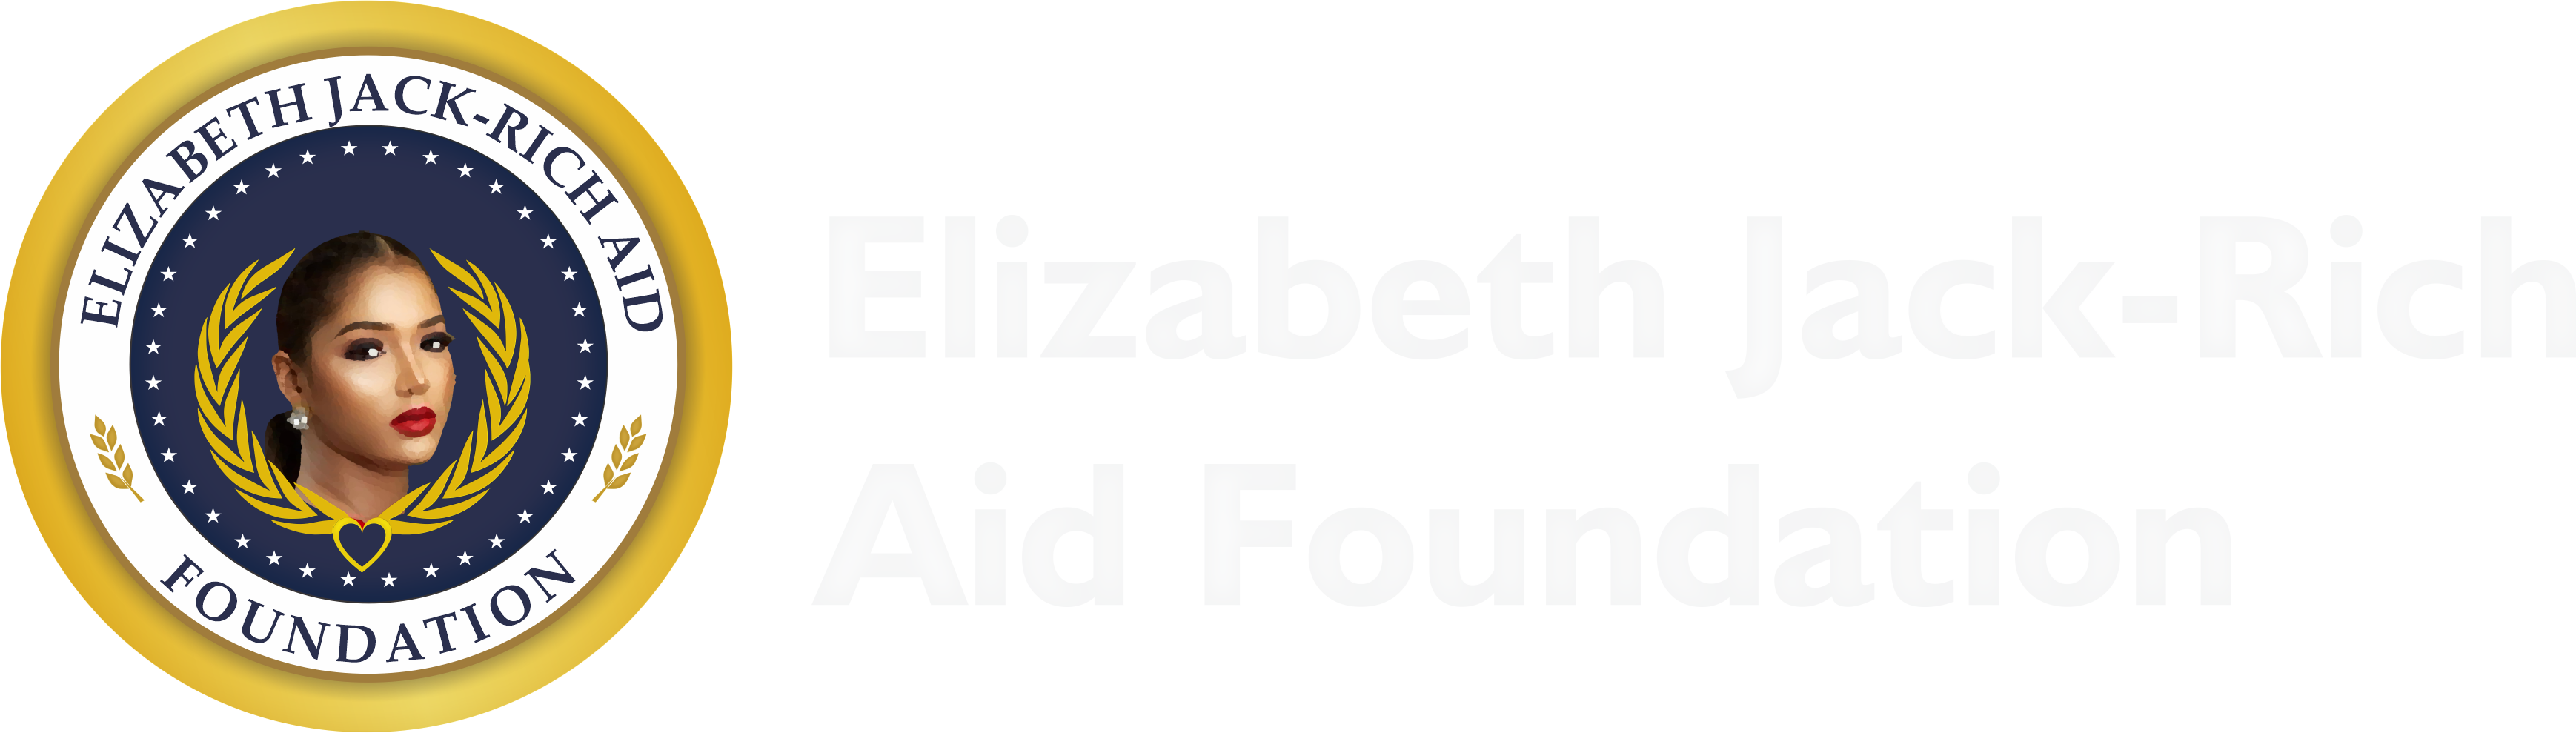 Elizabeth Jack-Rich Aid Foundation